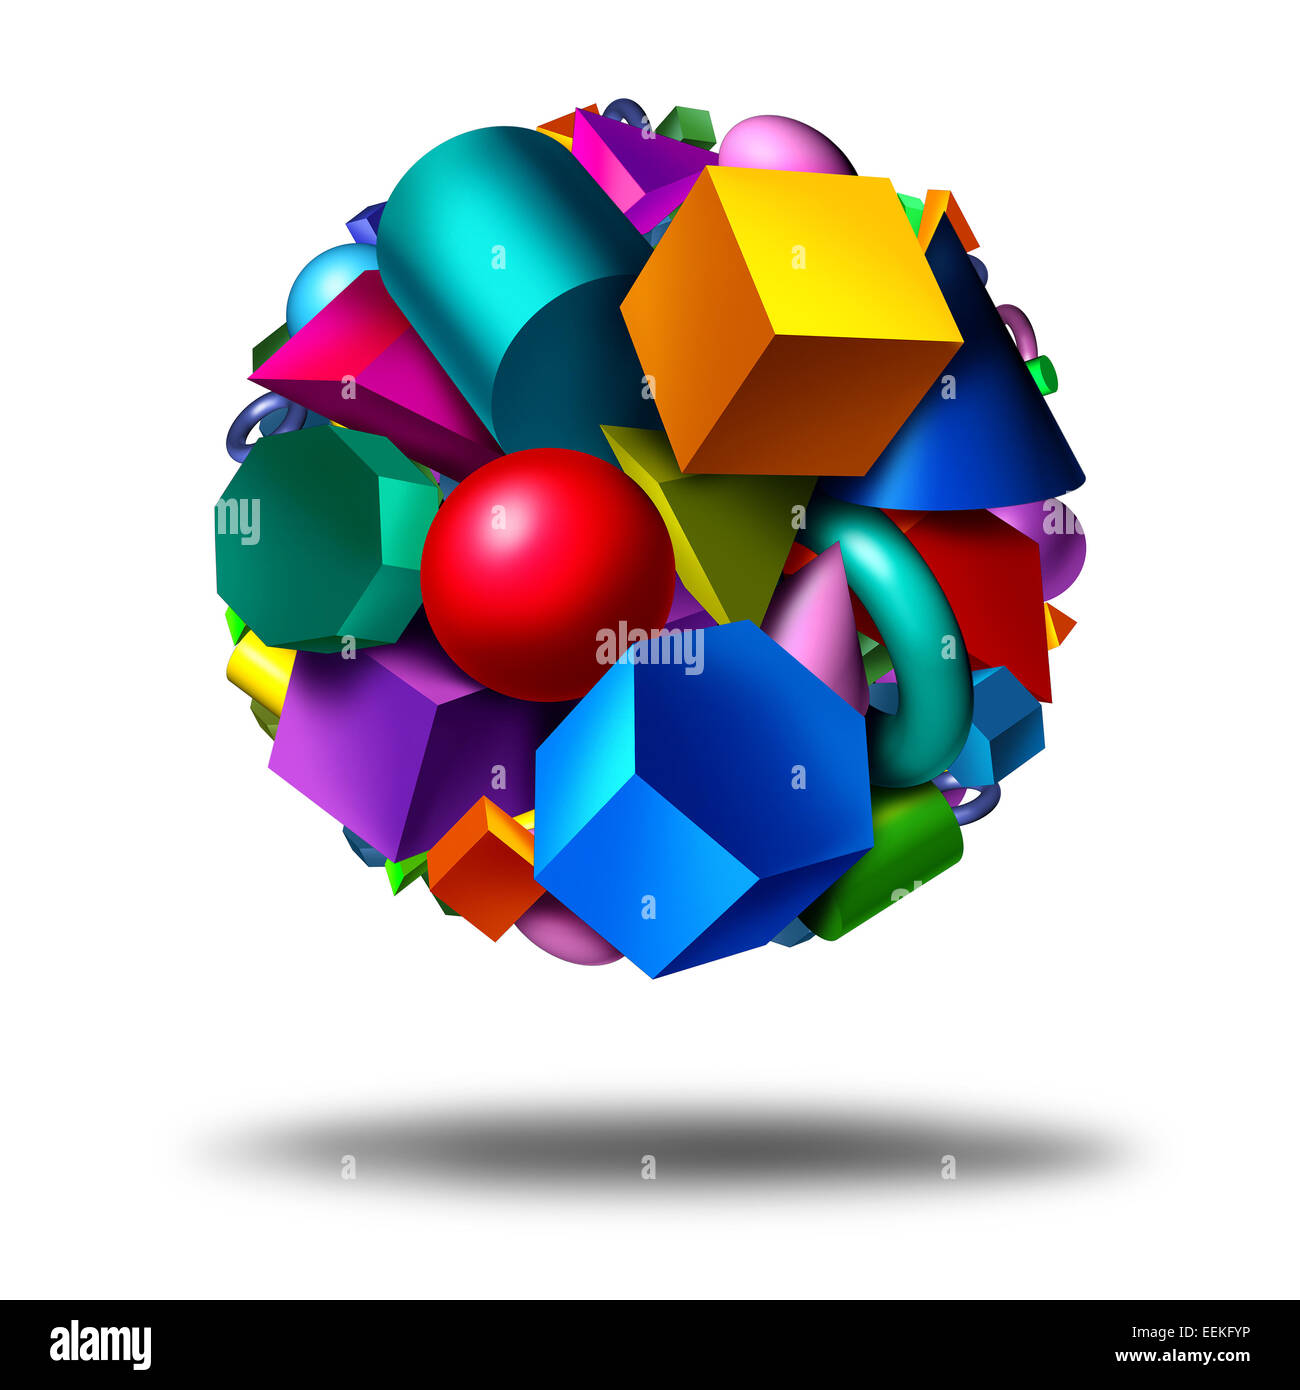 Geometria obects simbolo come un gruppo di tridimensionali di forme geometriche nella forma di un globo con figure come un cubo cilindro sfera galleggiante su uno sfondo bianco come un'istruzione matematica e la nozione di apprendimento. Foto Stock